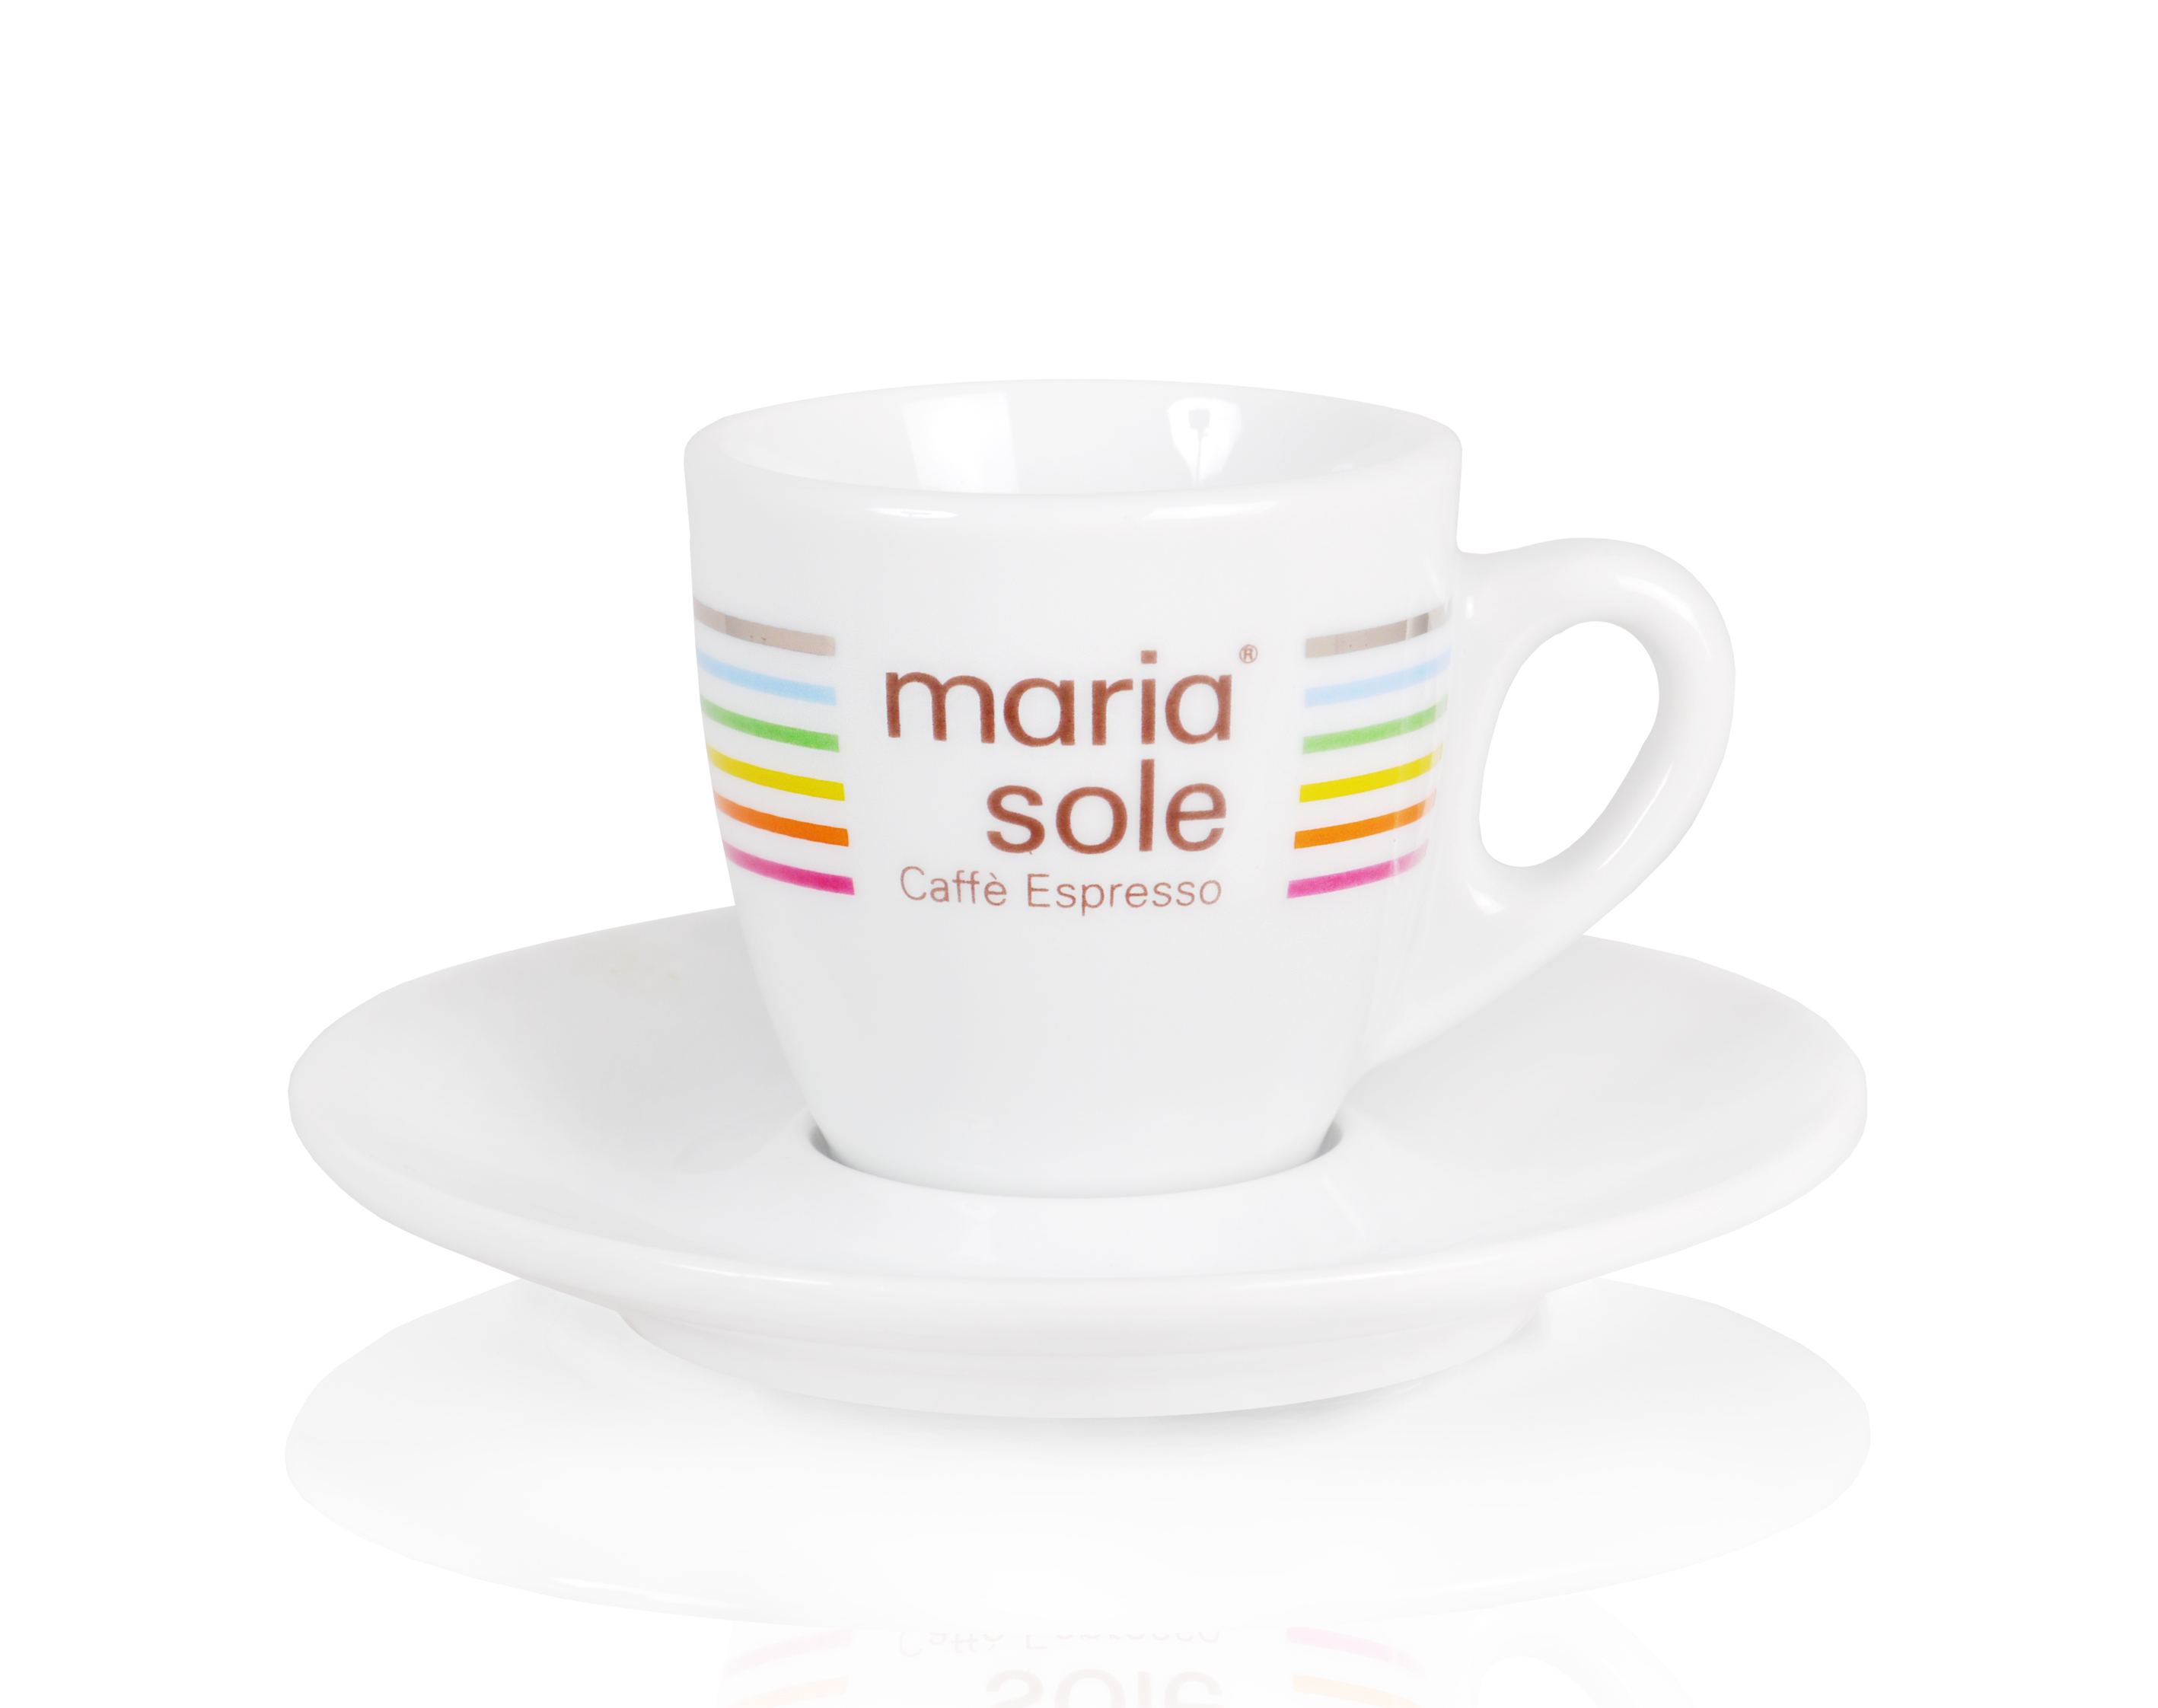 MARIASOLE & MILLE SOLI Espresso Cup / Saucer